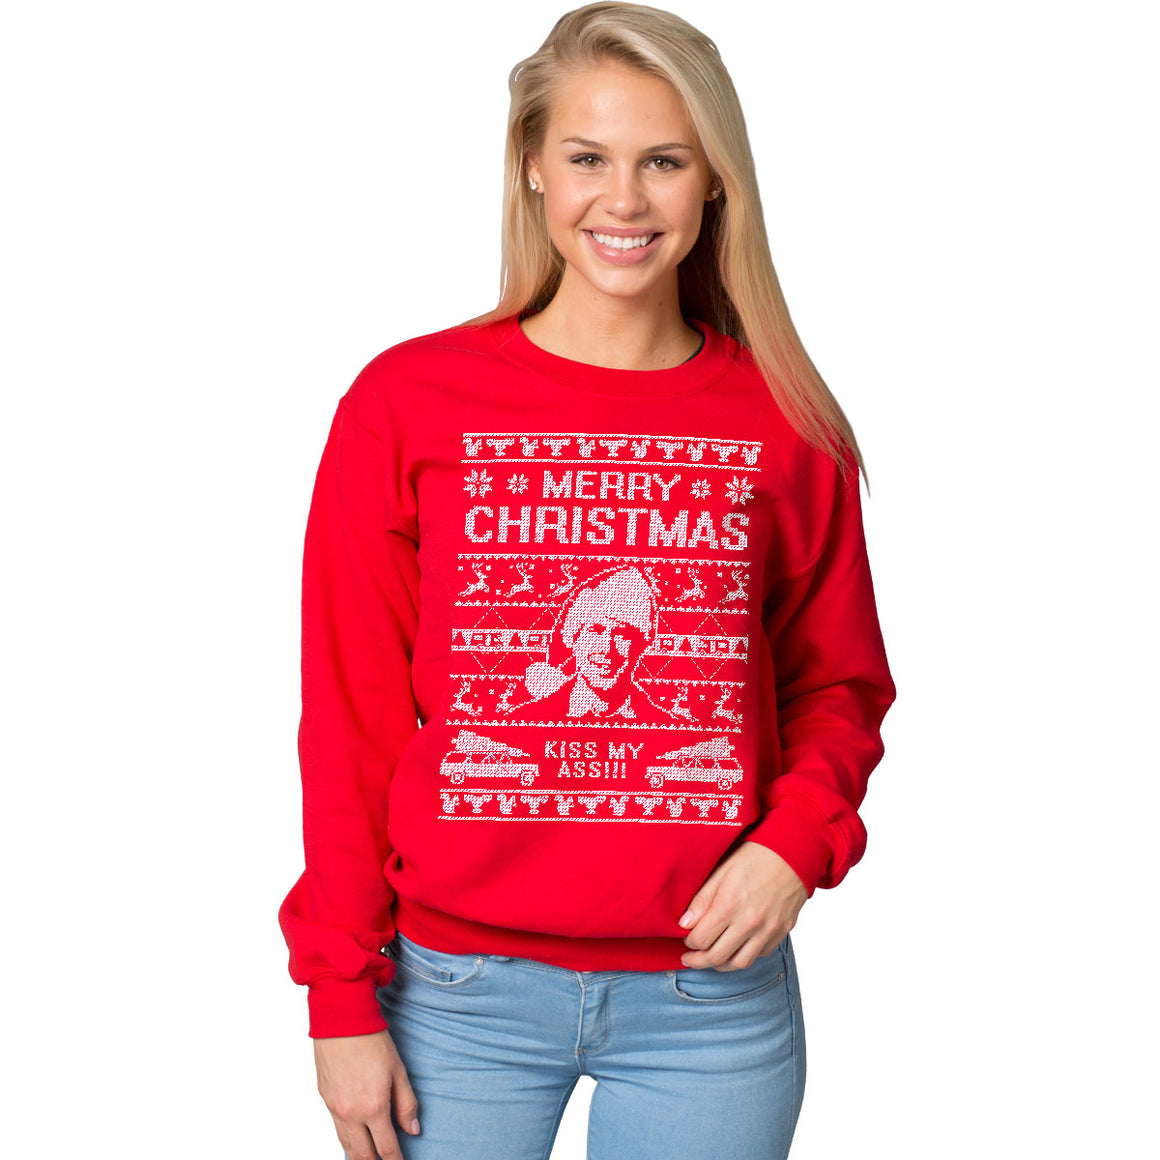 Merry Christmas, Kiss My Ass - Ugly Christmas Sweatshirt